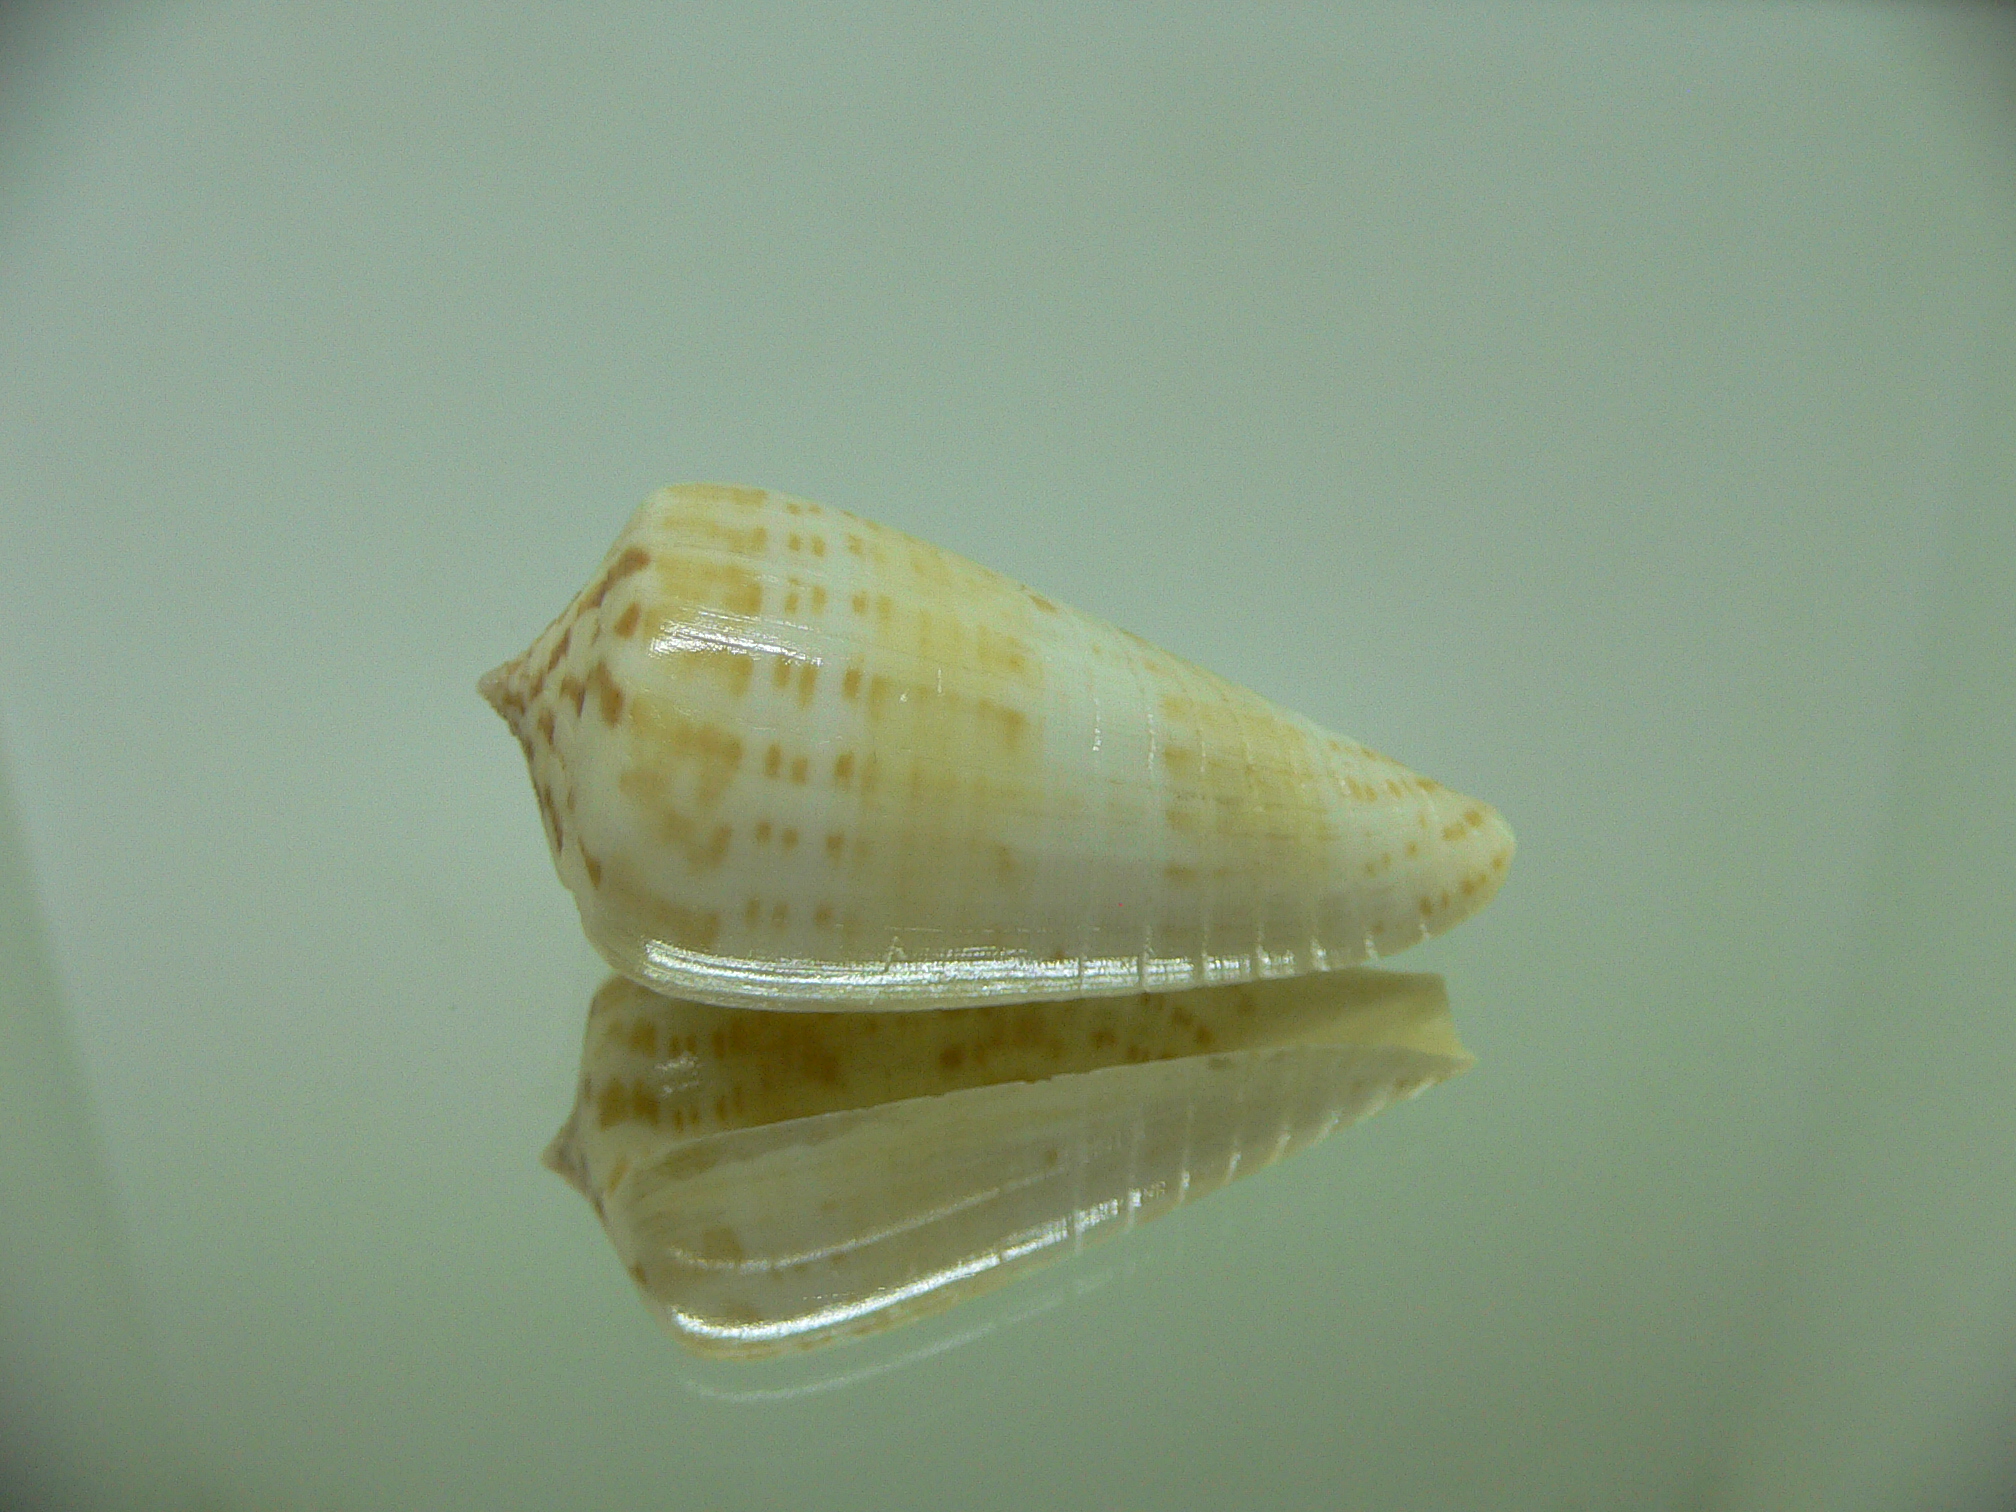 Conus inscriptus maculospira (var.)